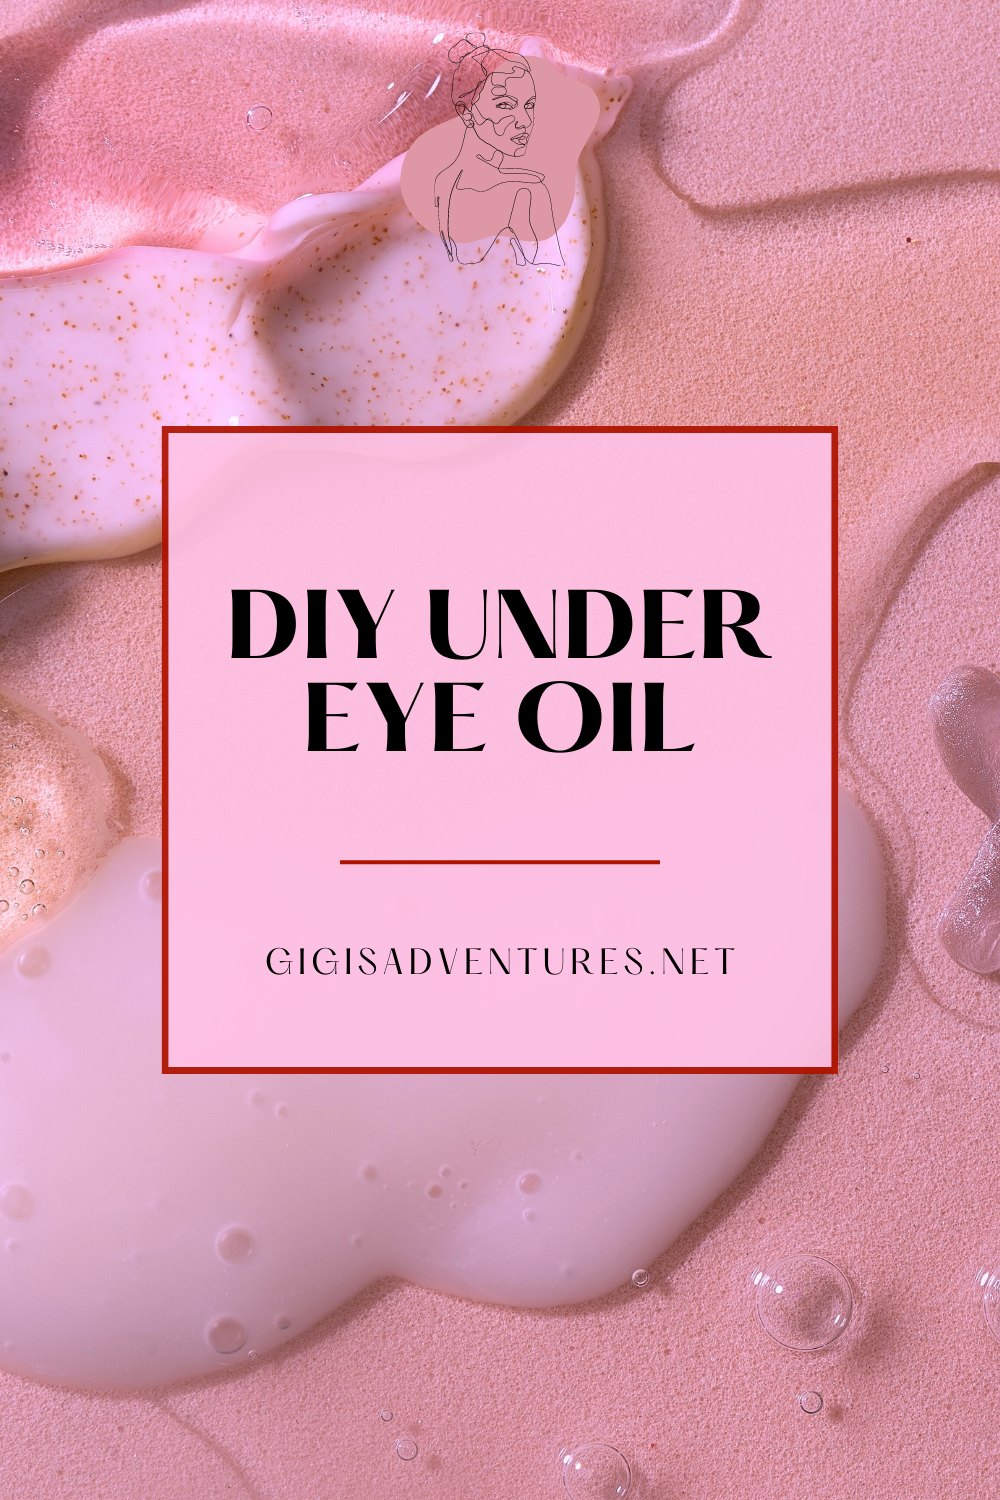 DIY Under Eye Oil | DIY Eye Oil, DIY Eye Mask